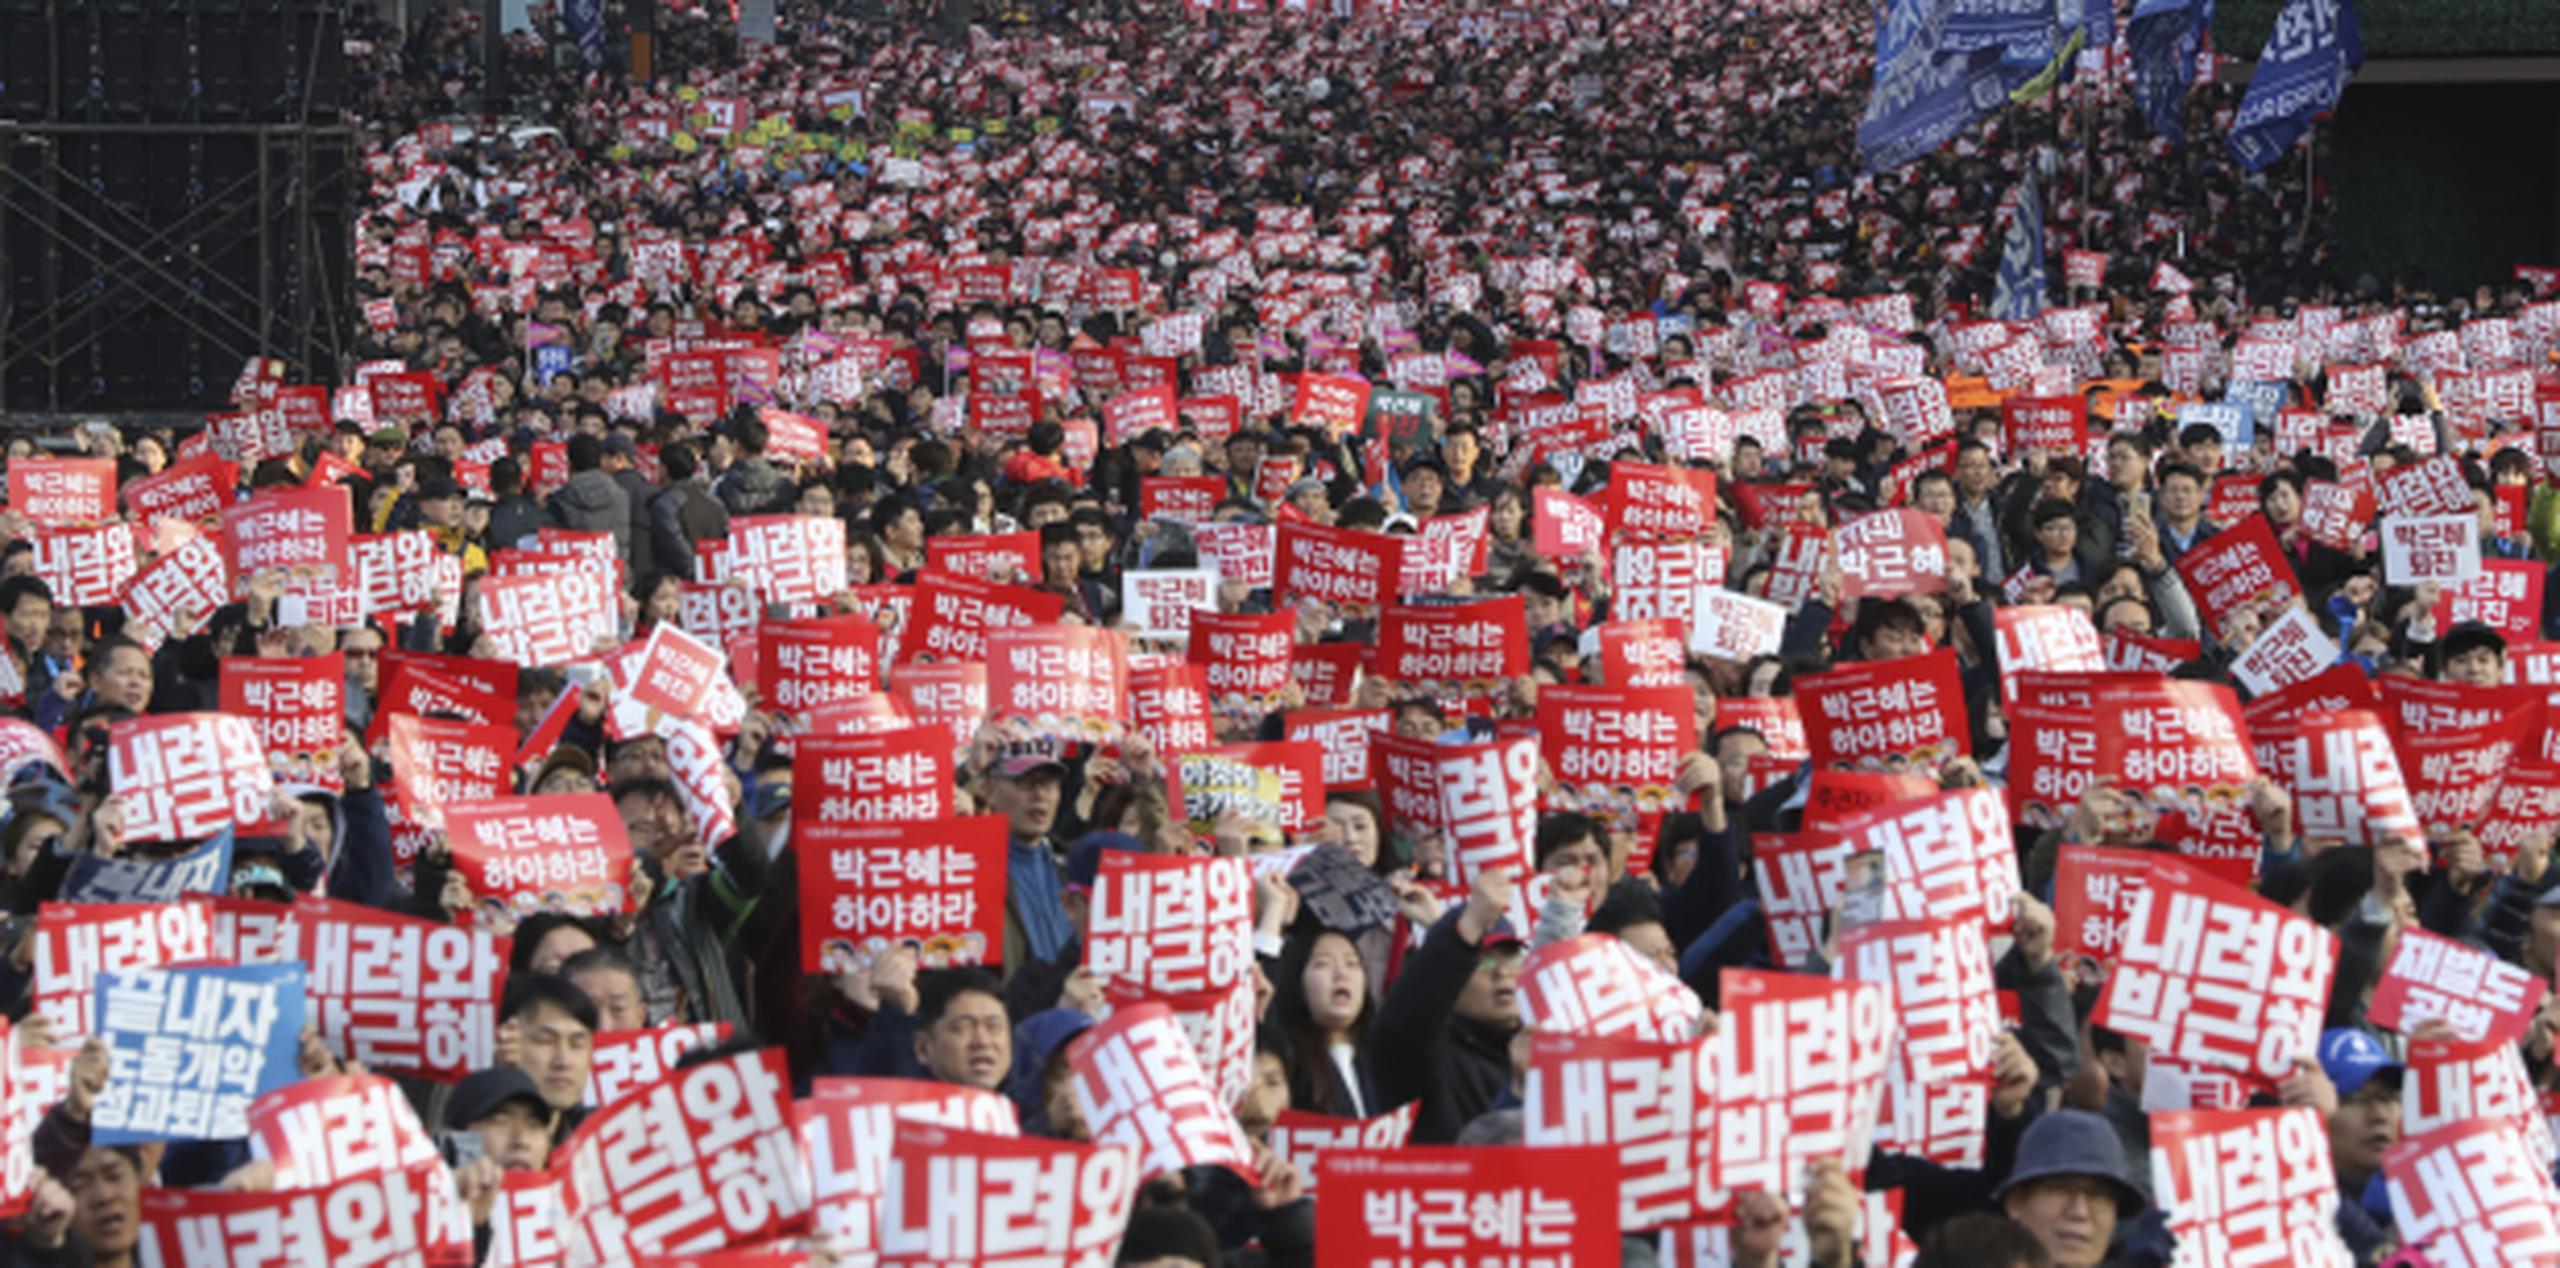 Una enorme manifestación en Seúl, que se estima reunió a por los menos 170,000 personas, reclamó la dimisión de la presidenta Park Geun-hye. (AP/Lee Jin-man)